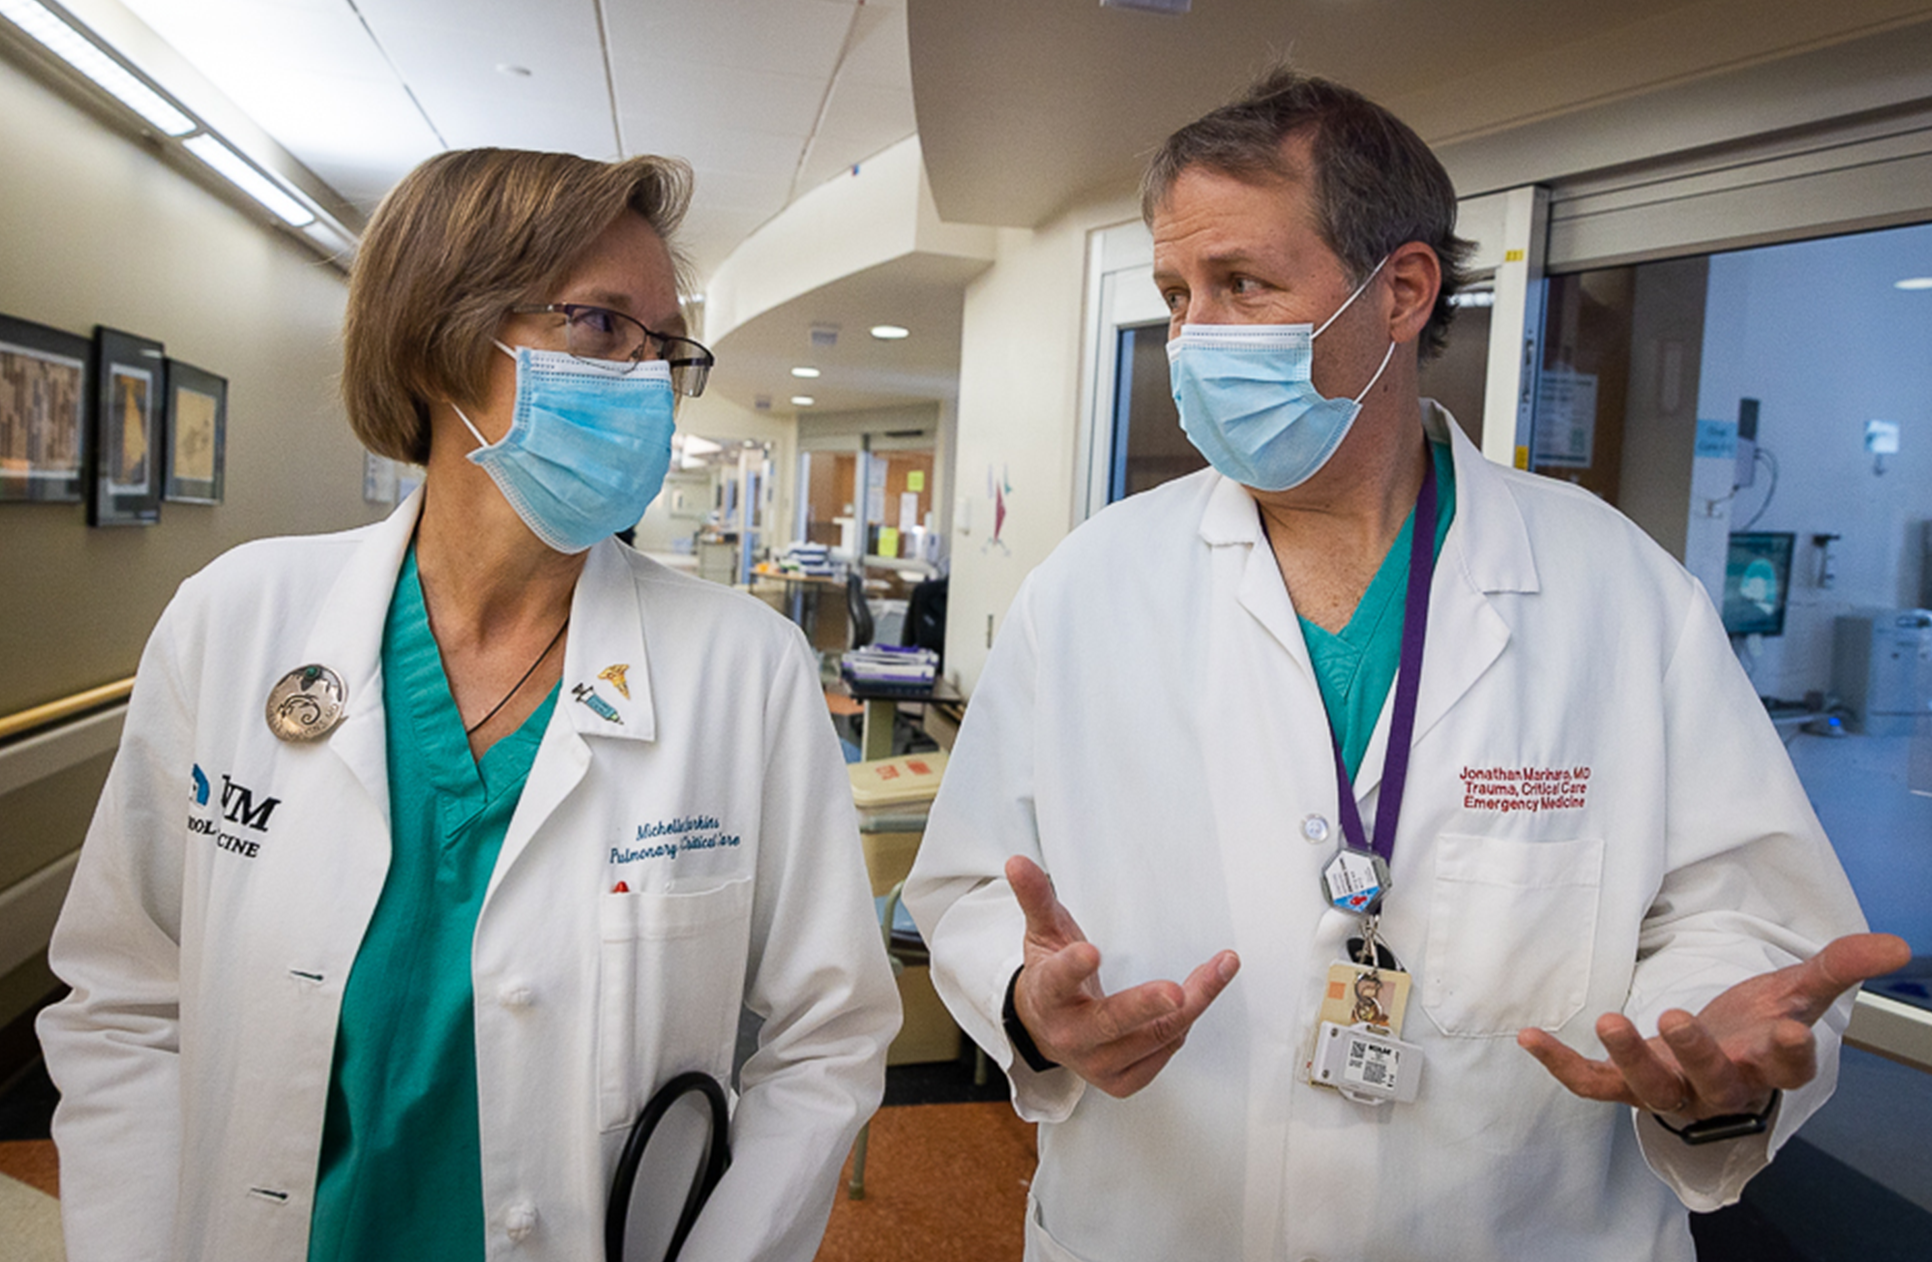 Michelle Harkins (à gauche) et Jon Marinaro (à droite) traversent une salle d'urgence d'un hôpital